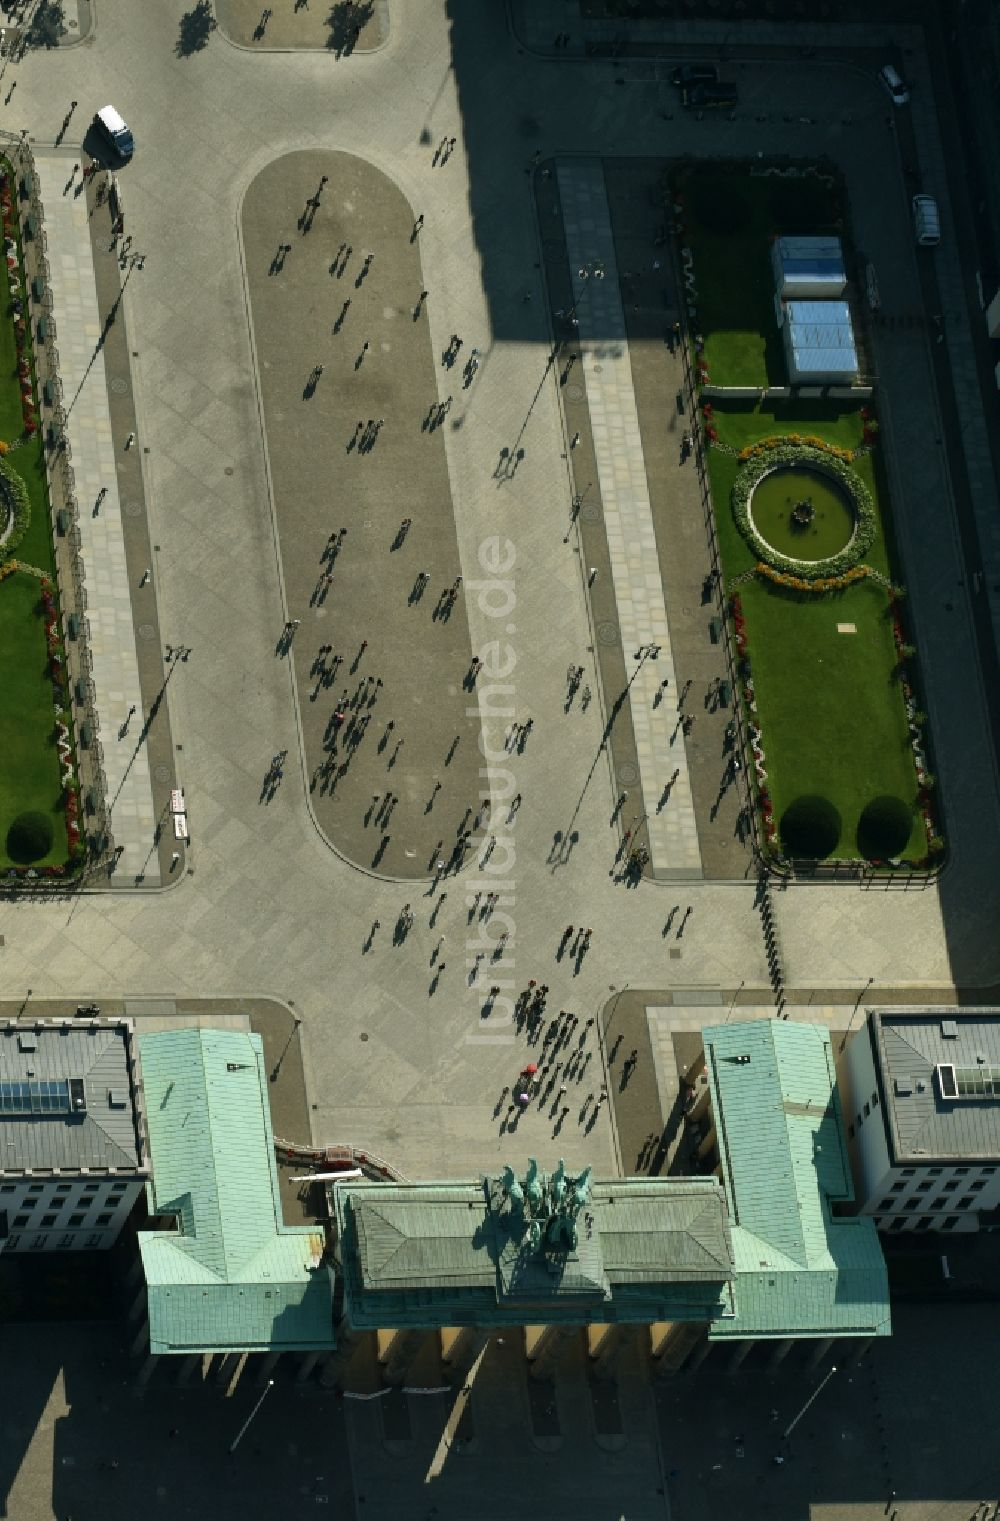 Berlin von oben - Sehenswürdigkeit und Wahrzeichen Brandenburger Tor am Pariser Platz im Ortsteil Mitte von Berlin